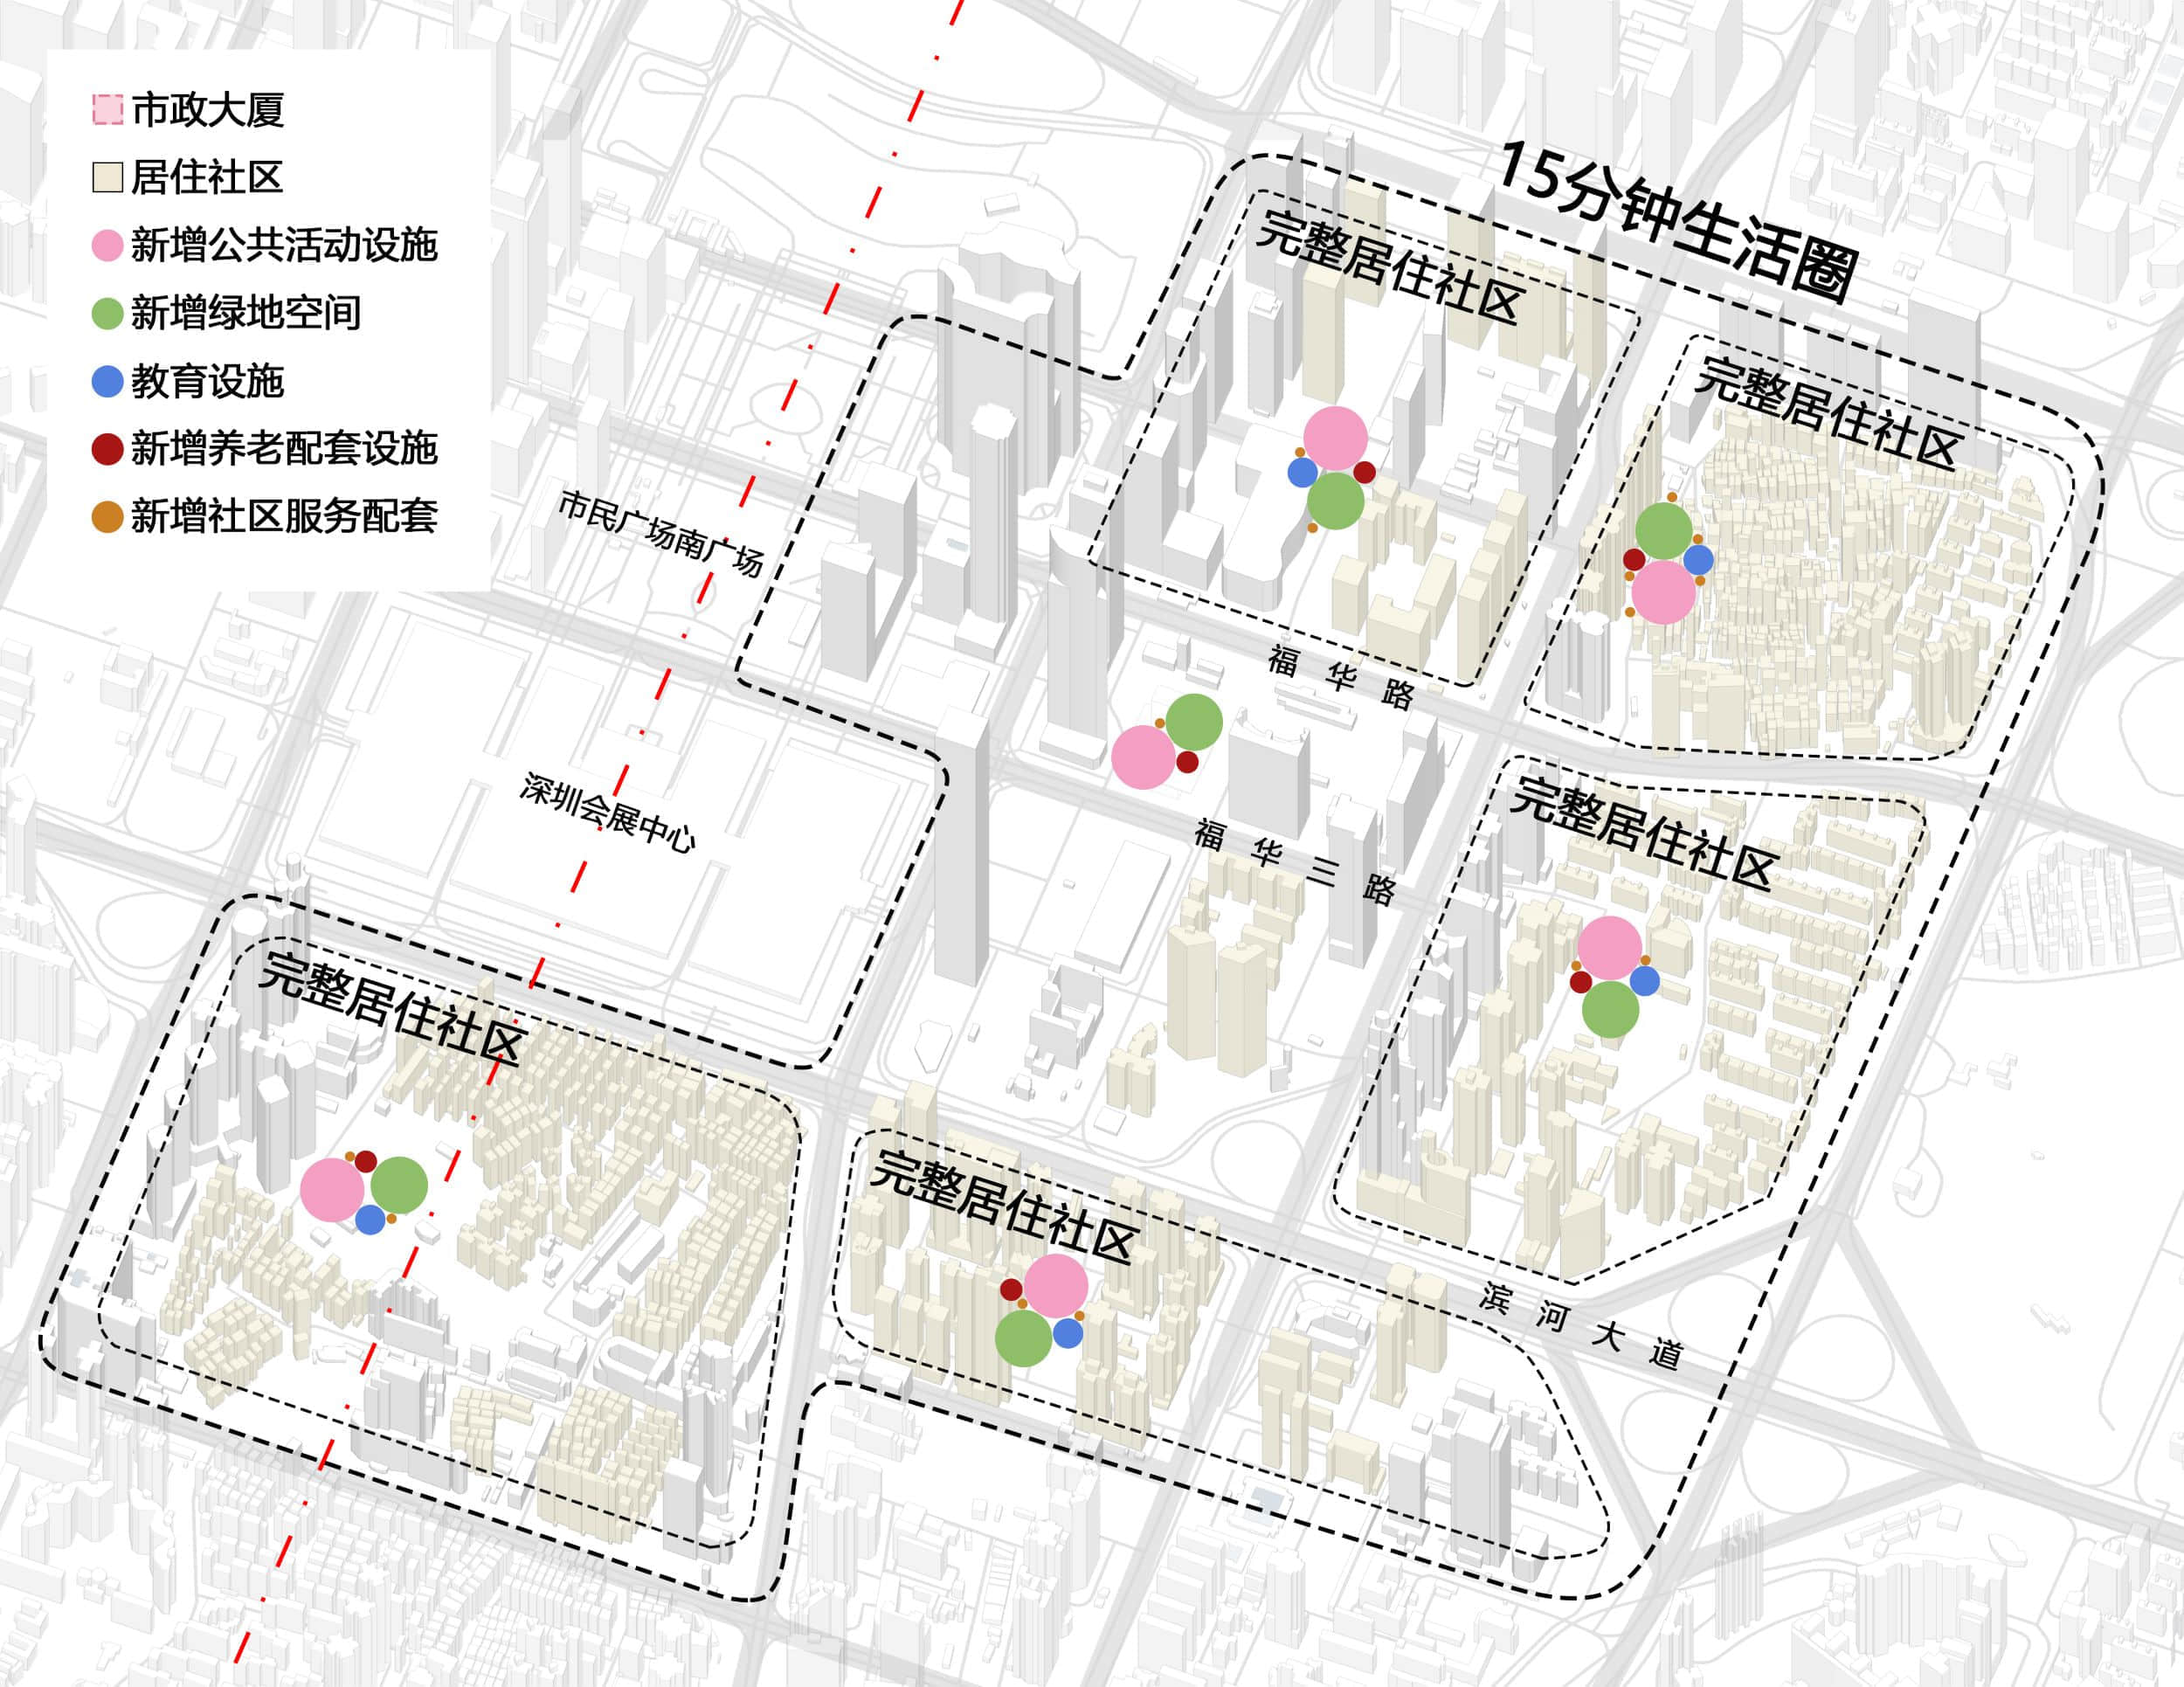 福田市中心区一个“15分钟生活圈”中，公共服务分散在各“完整居住社区”中的示意图